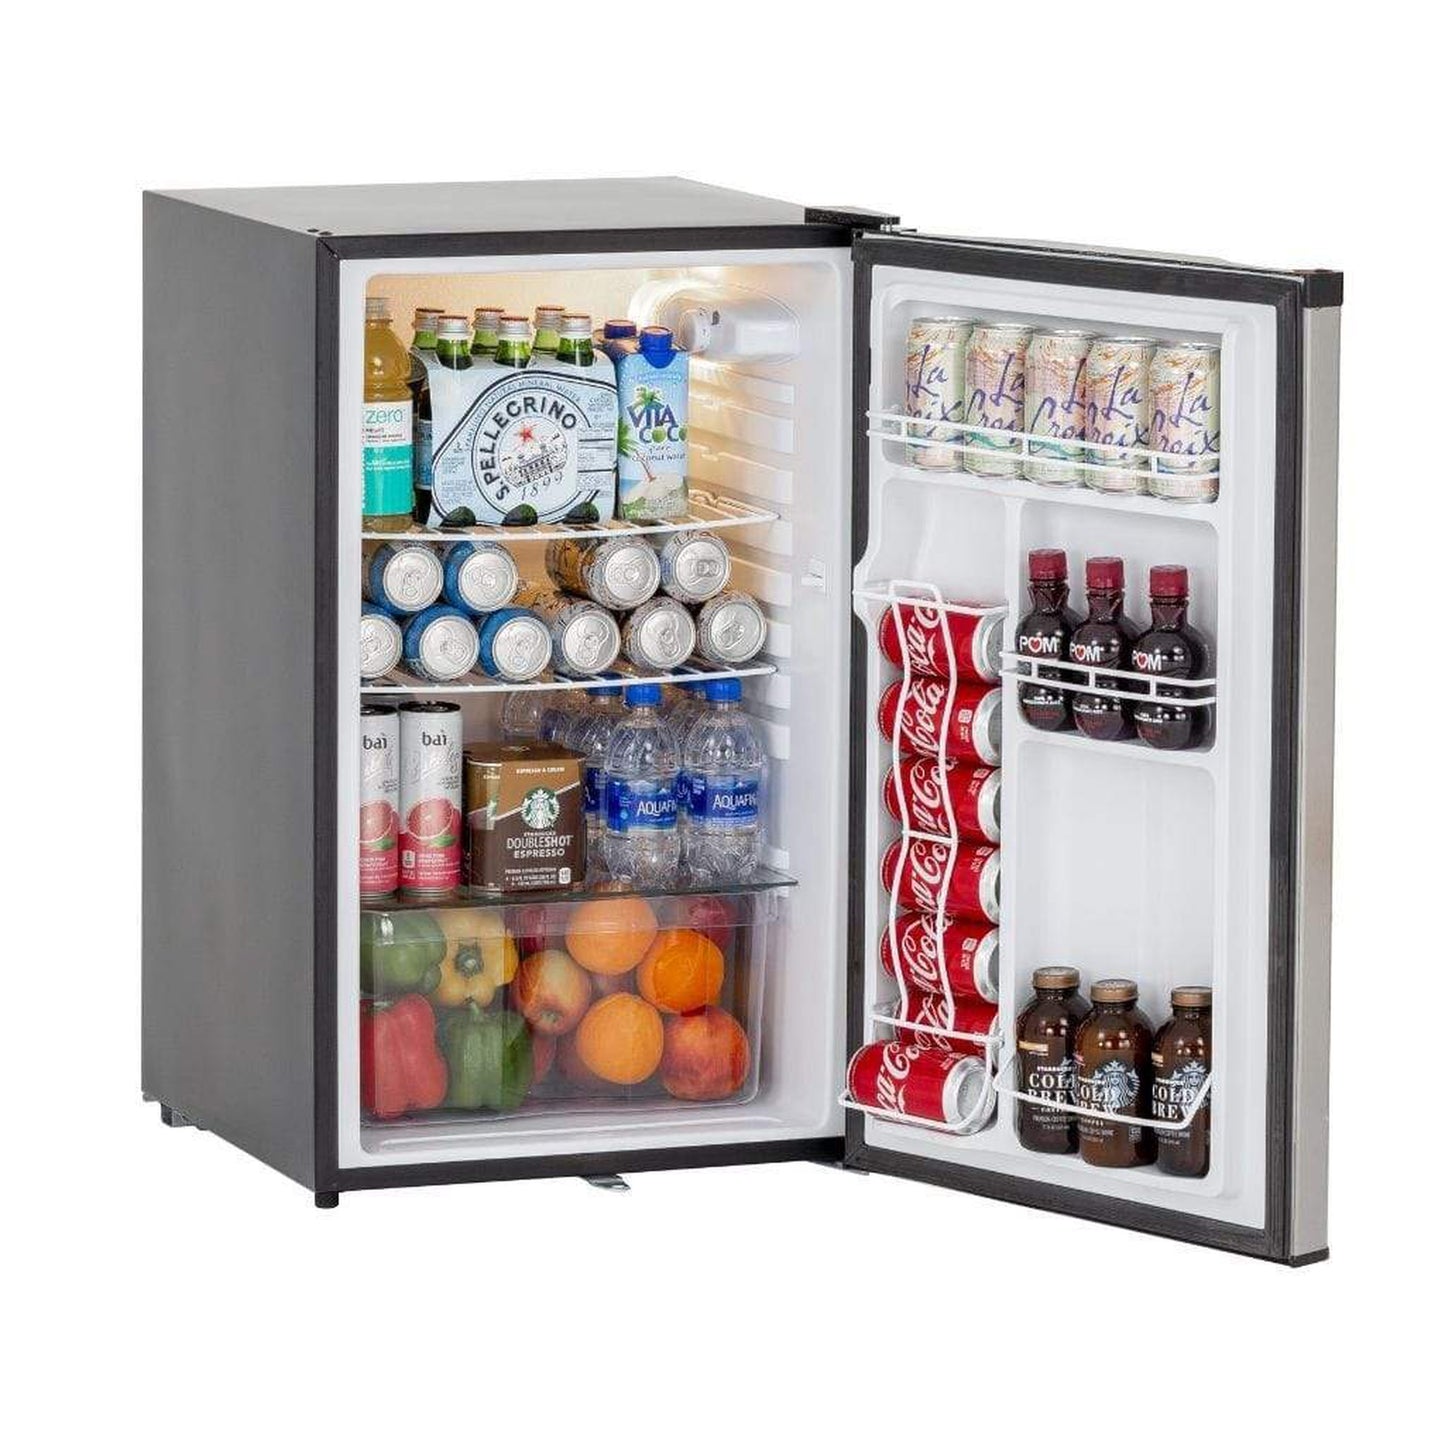 Summerset 21" 4.5 Cu. Ft. Compact Refrigerator with Reversible Door